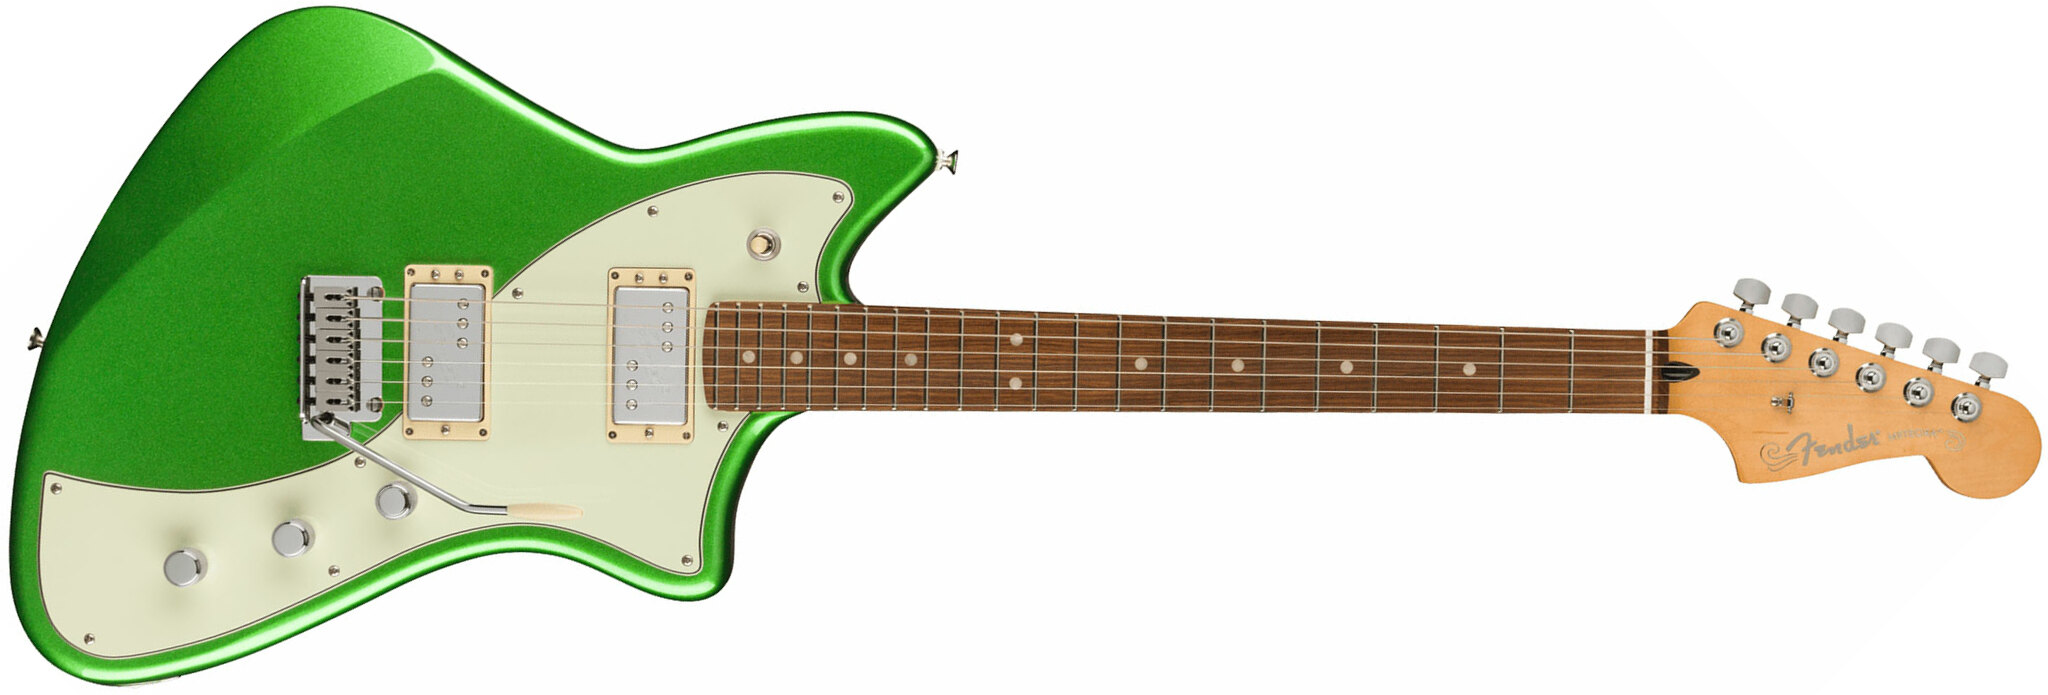 Fender Meteora Player Plus Hh Mex 2h Ht Pf - Cosmic Jade - Retro-rock elektrische gitaar - Main picture